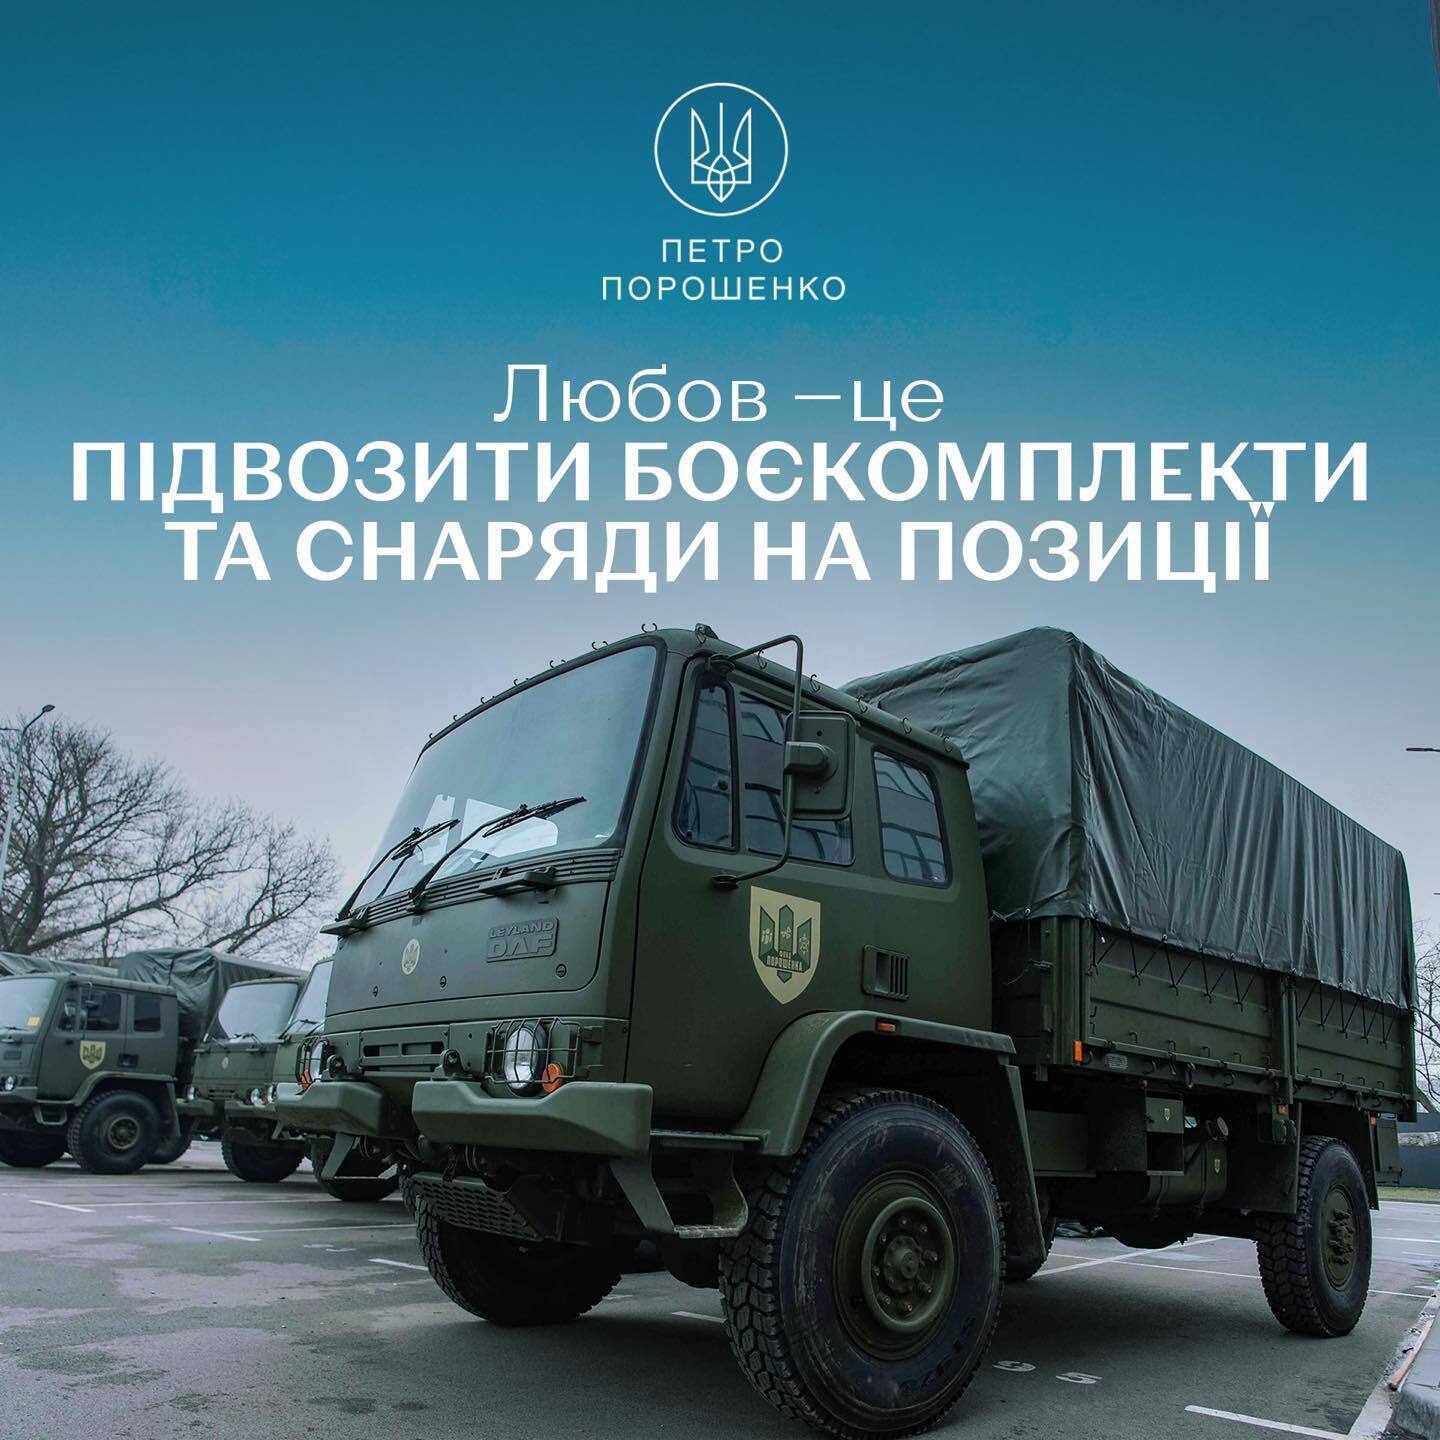 "Любить ВСУ вместе": Порошенко показал актуальные "валентинки" и призвал донатить на армию